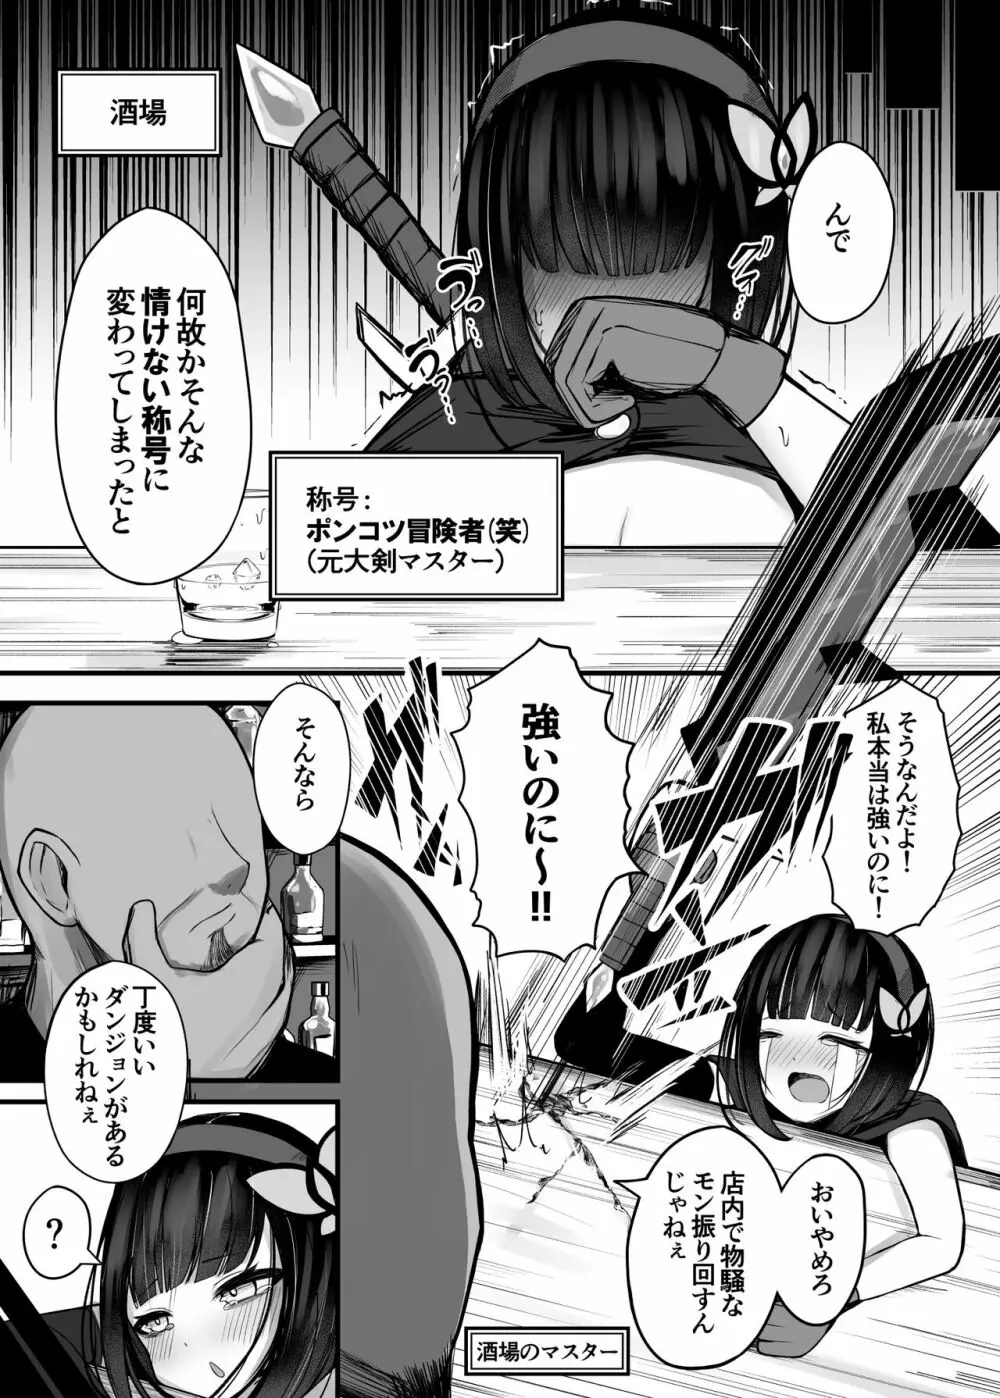 大剣マスターの 冒険者ちゃんが 触手の潜む ダンジョンに 挑戦する話 - page6